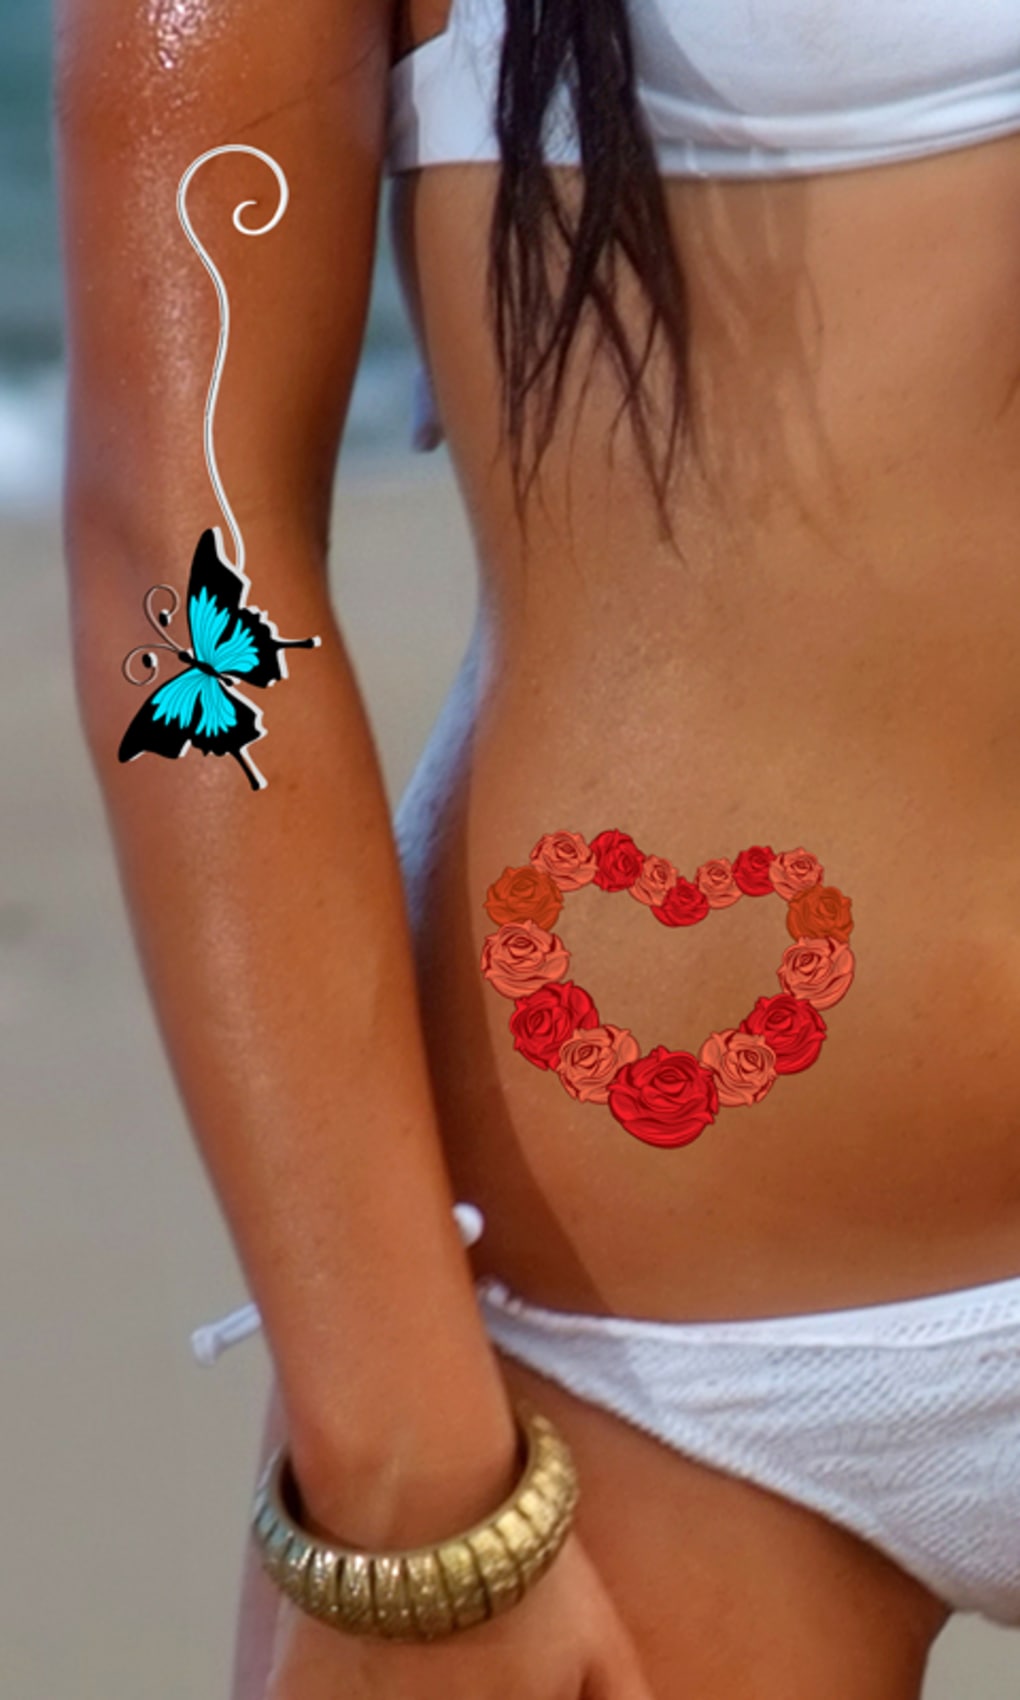 TEMPORARY TATTOOWALA Shree Lord Krishna Tattoo Waterproof For Boys and  Girls Temporary Body Tattoo : Amazon.in: Beauty